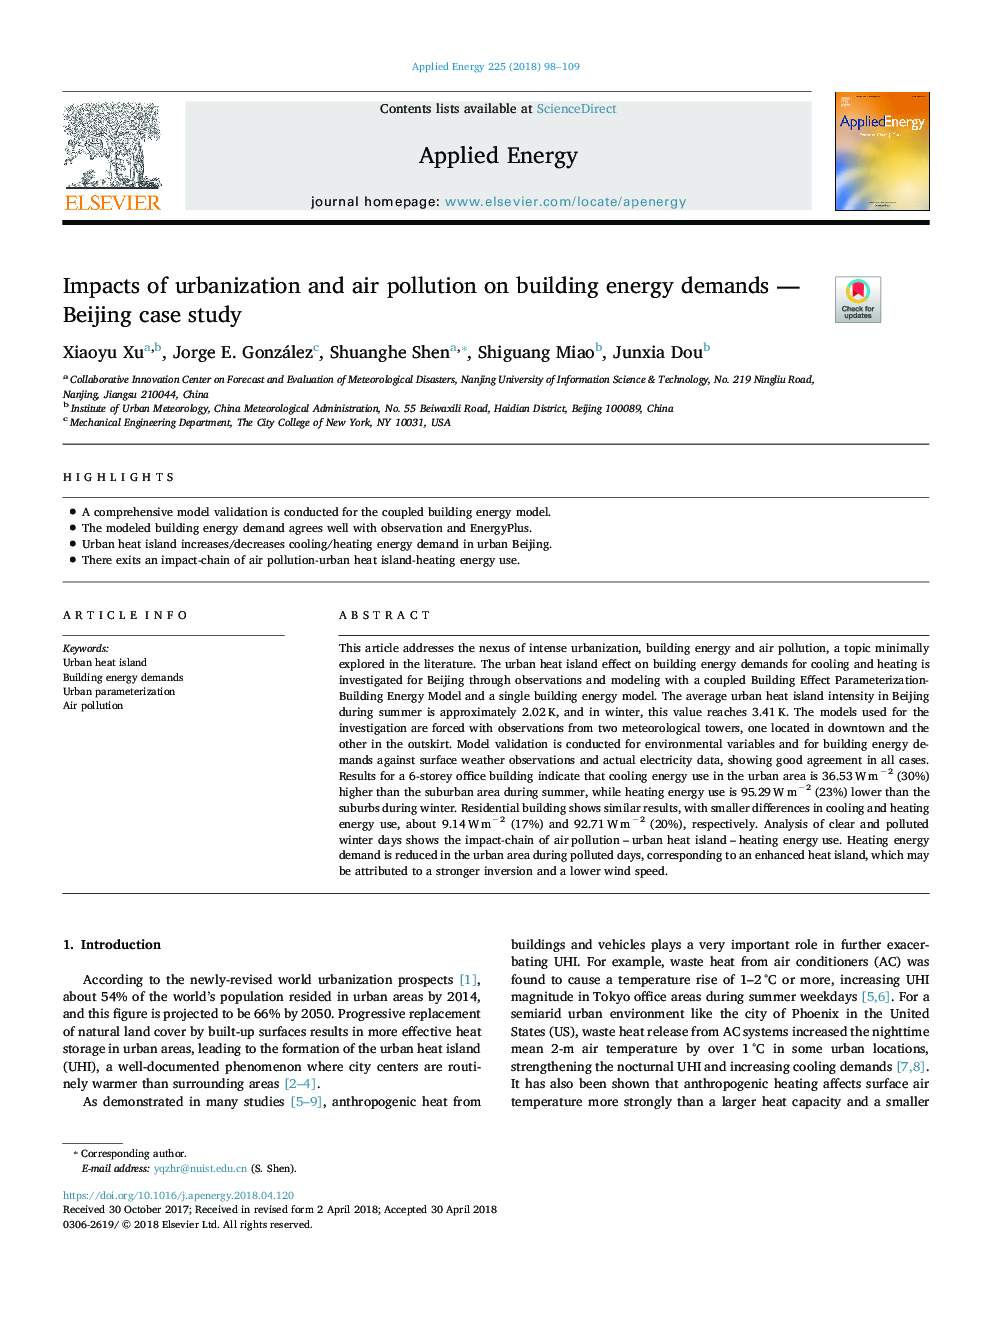 اثرات شهرنشینی و آلودگی هوا بر نیازهای انرژی - مطالعه موردی پکن 